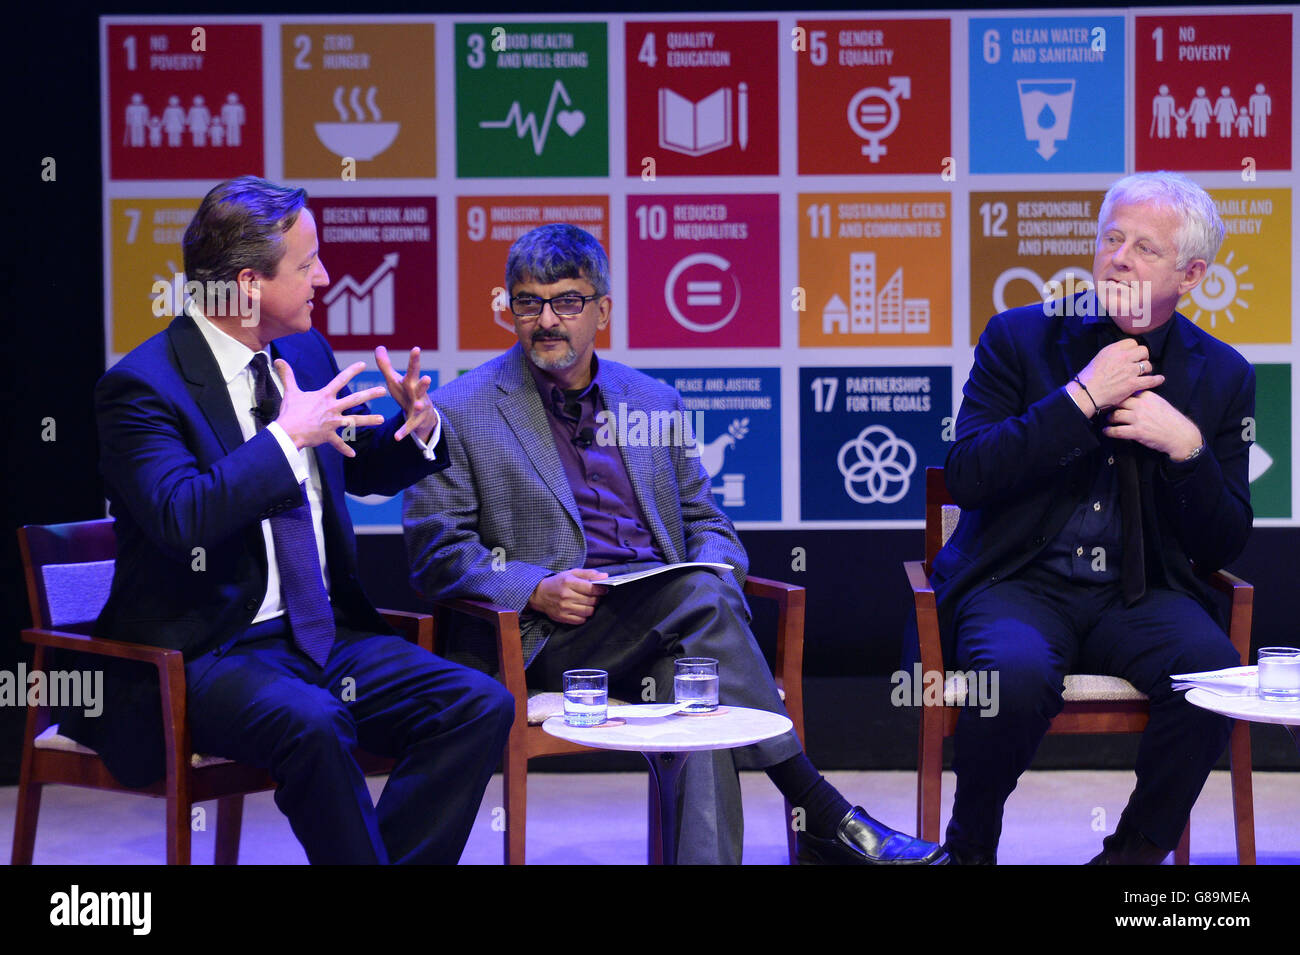 Il primo Ministro David Cameron ospita un evento per discutere gli obiettivi globali per ridurre la povertà nel mondo con Rakesh Rajani (centro) della Ford Foundation e lo scrittore Richard Curtis (destra) a New York, USA. Foto Stock